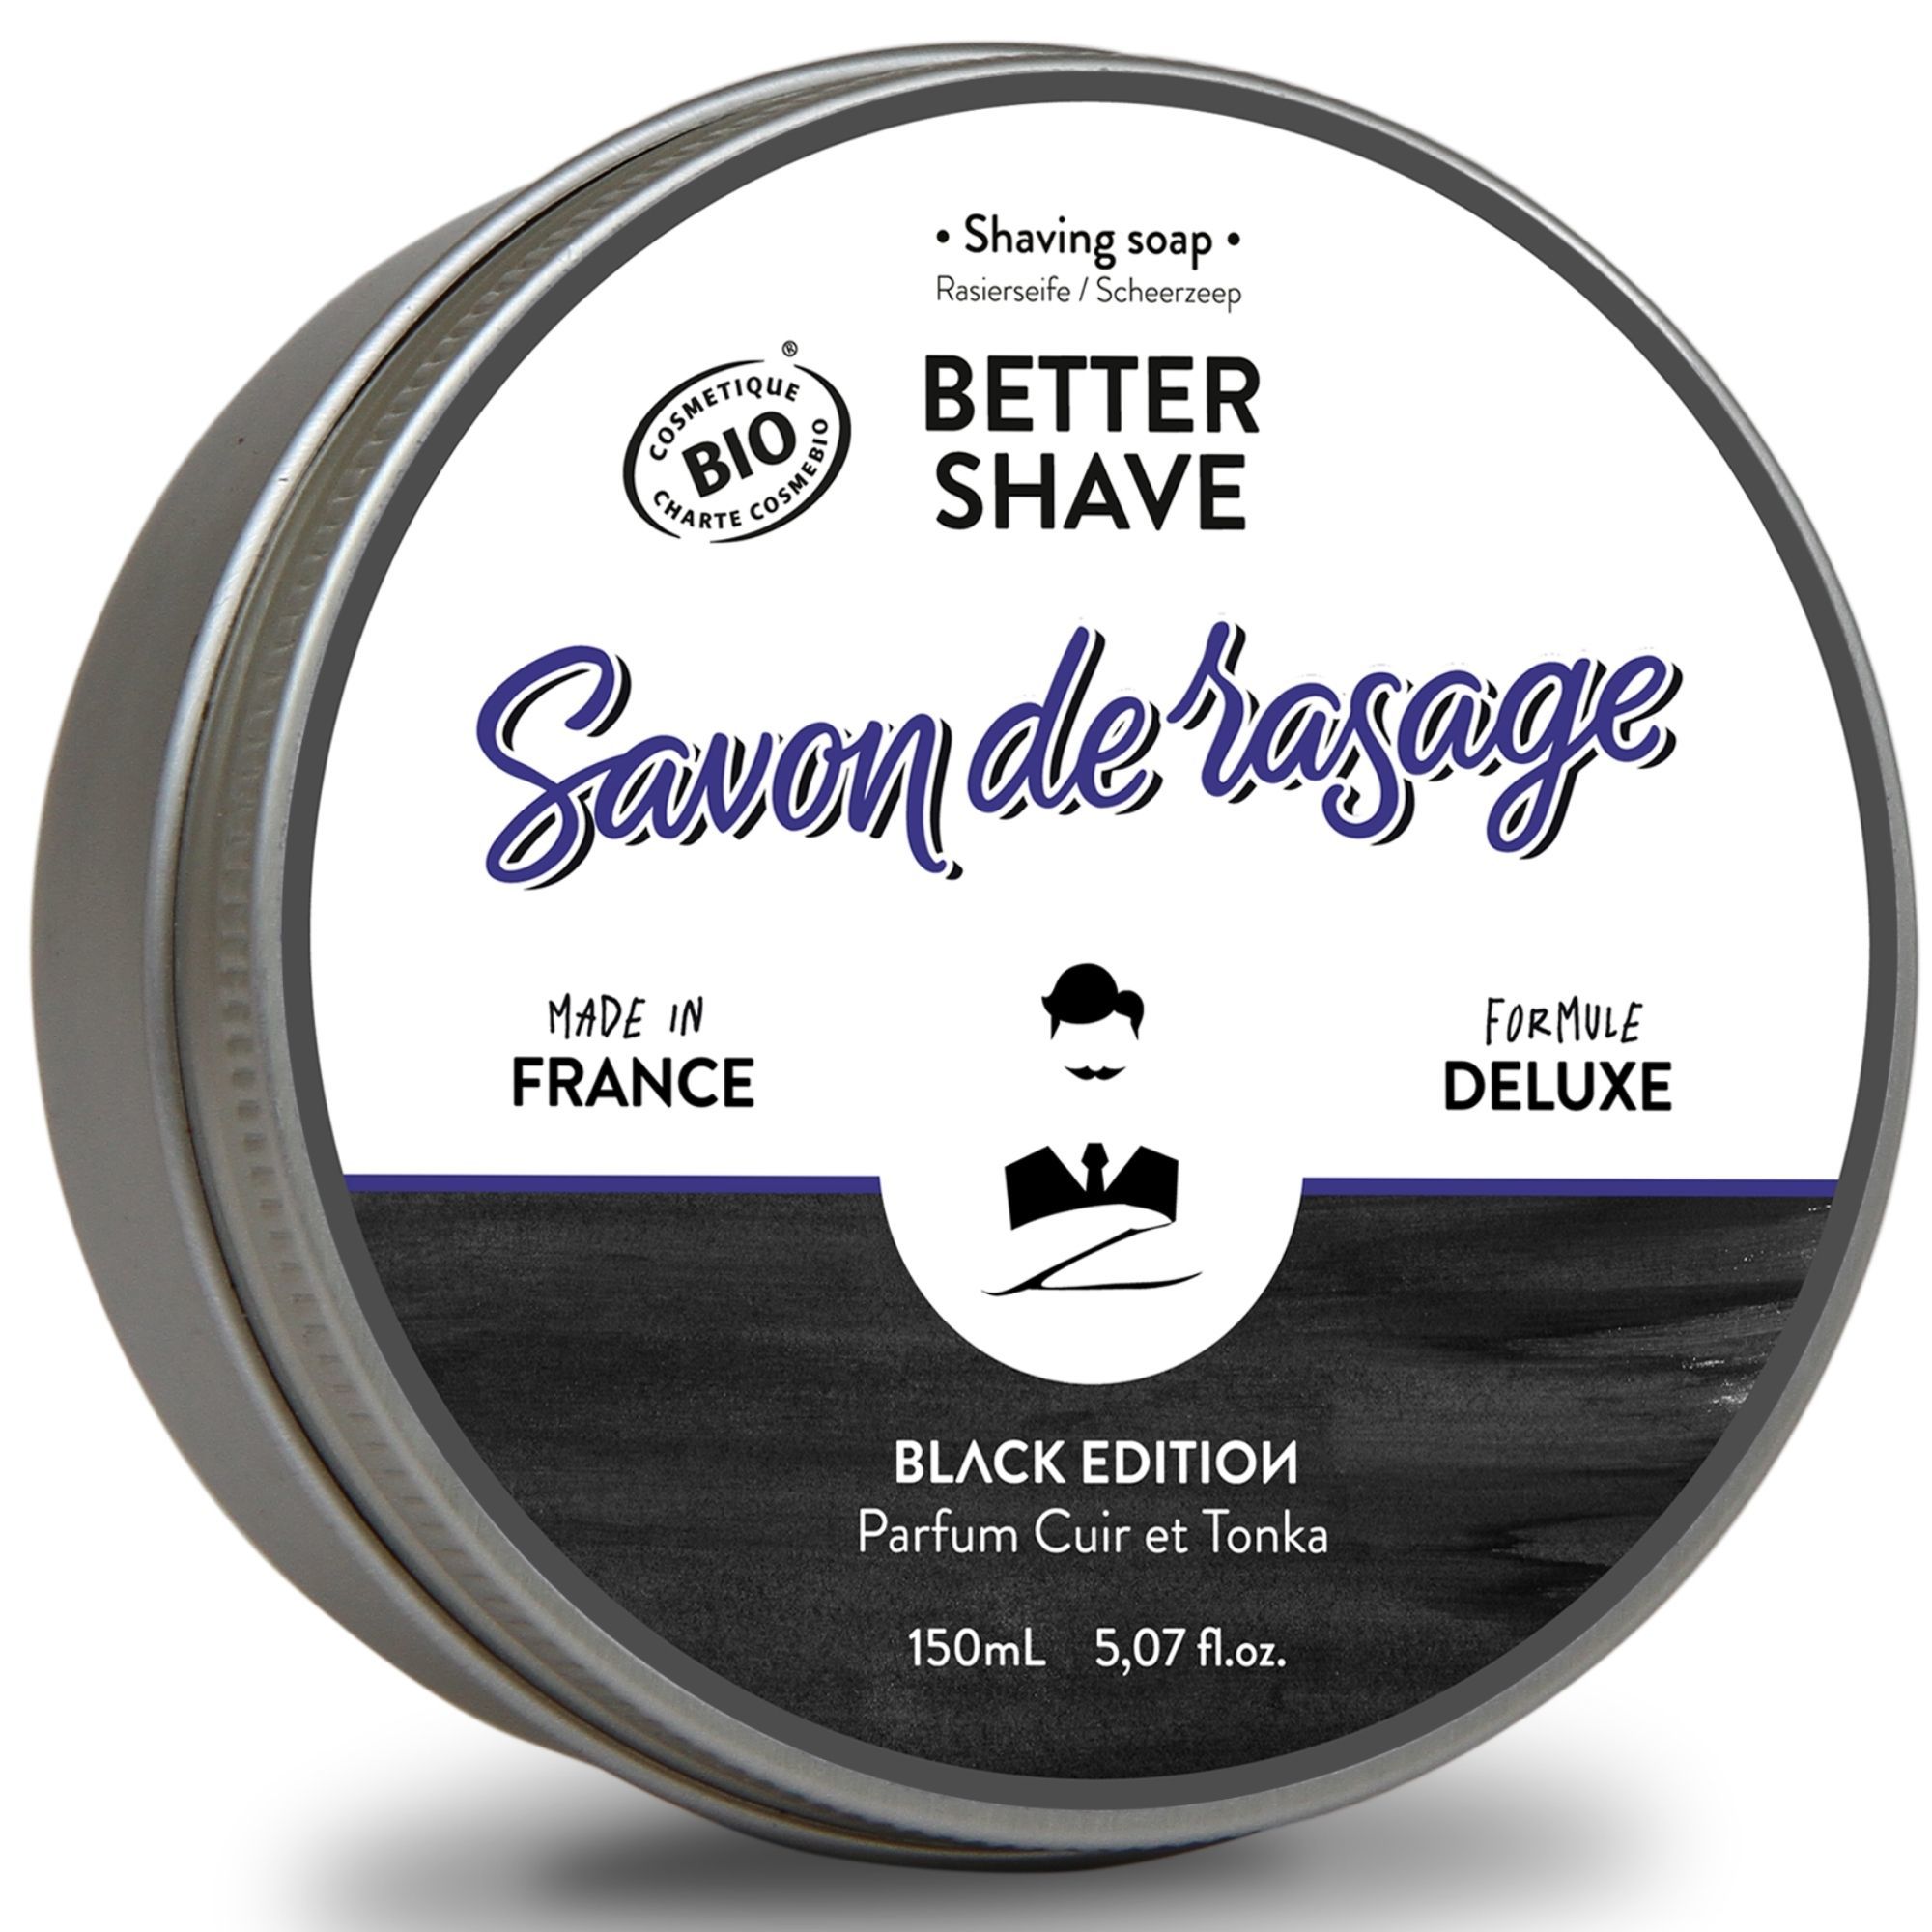 Savon rasage better-shave black edition